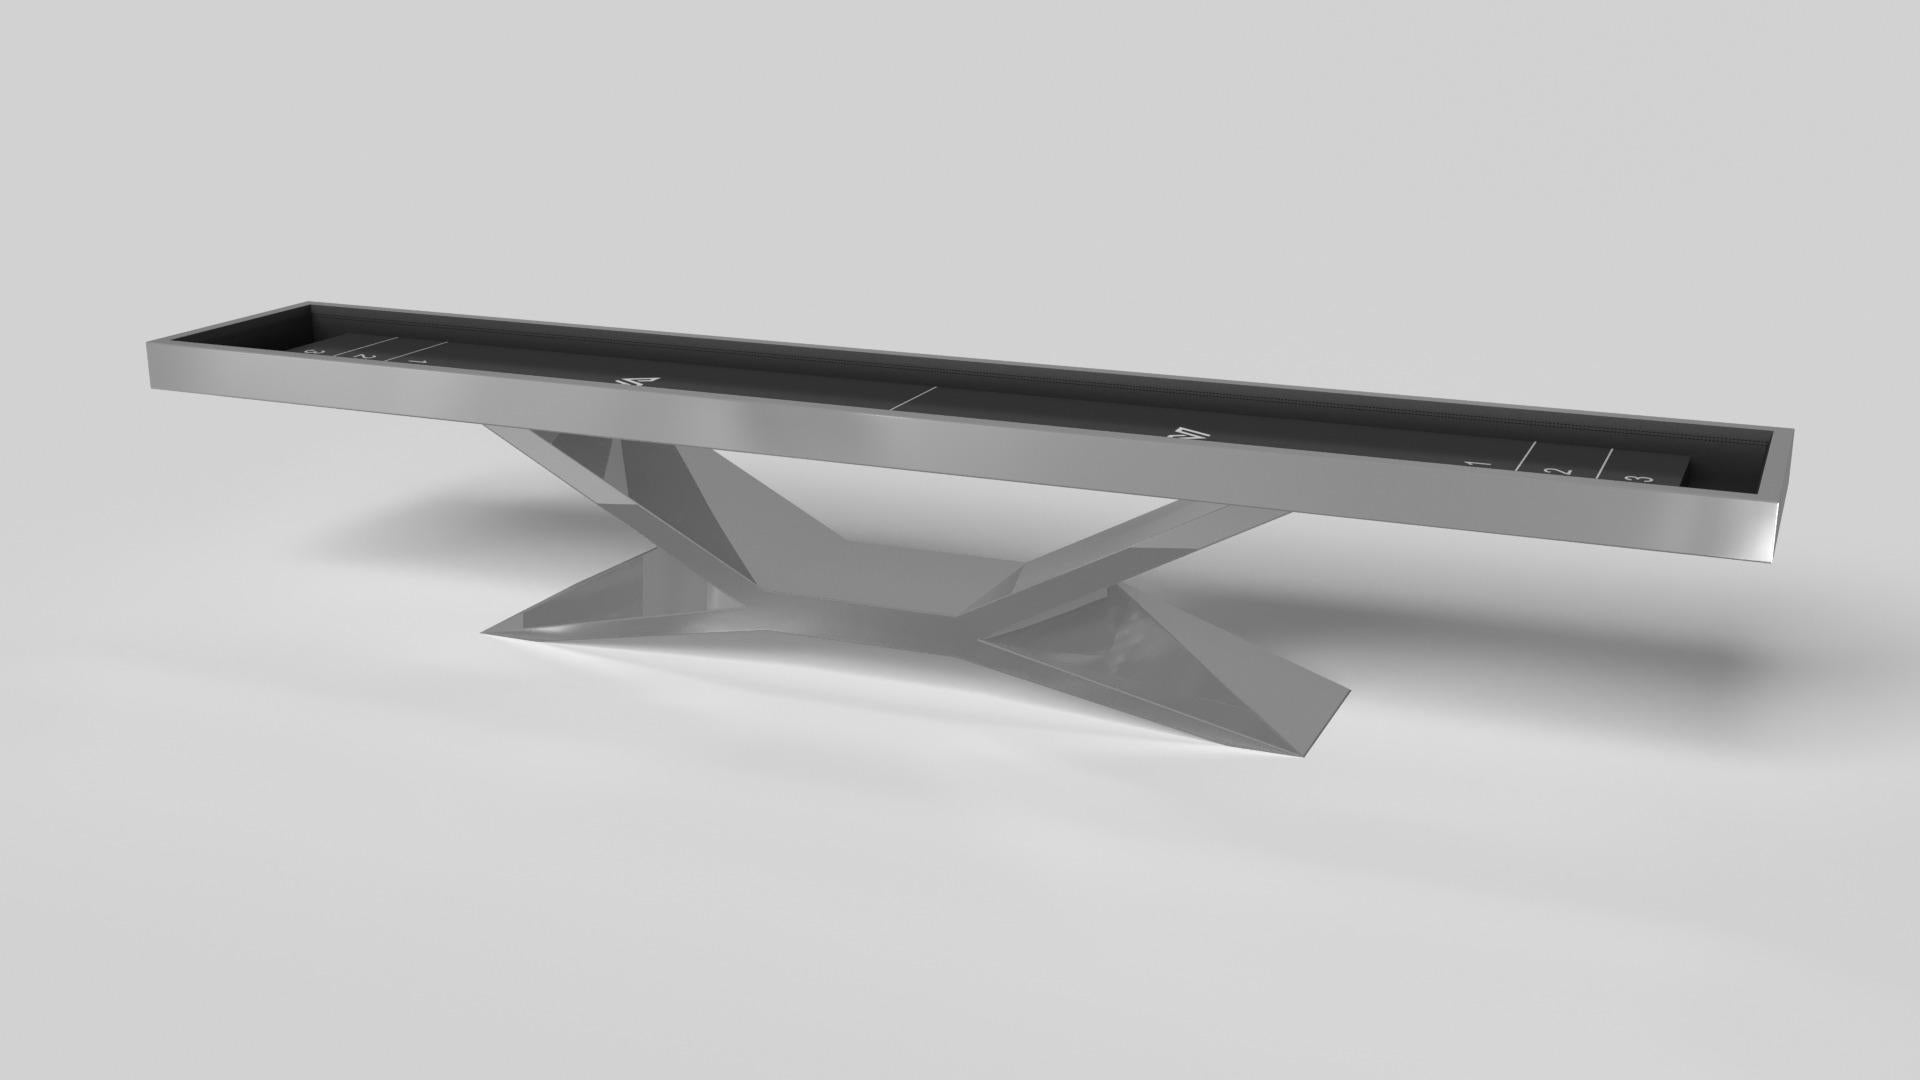 Der verchromte Shuffleboard-Tisch von Kors ist ein hervorragendes Beispiel für kontrastierende geometrische Formen. Dieser Tisch verfügt über ein kantiges Untergestell, das die Schönheit des negativen Raums in der Vorderansicht hervorhebt. In der